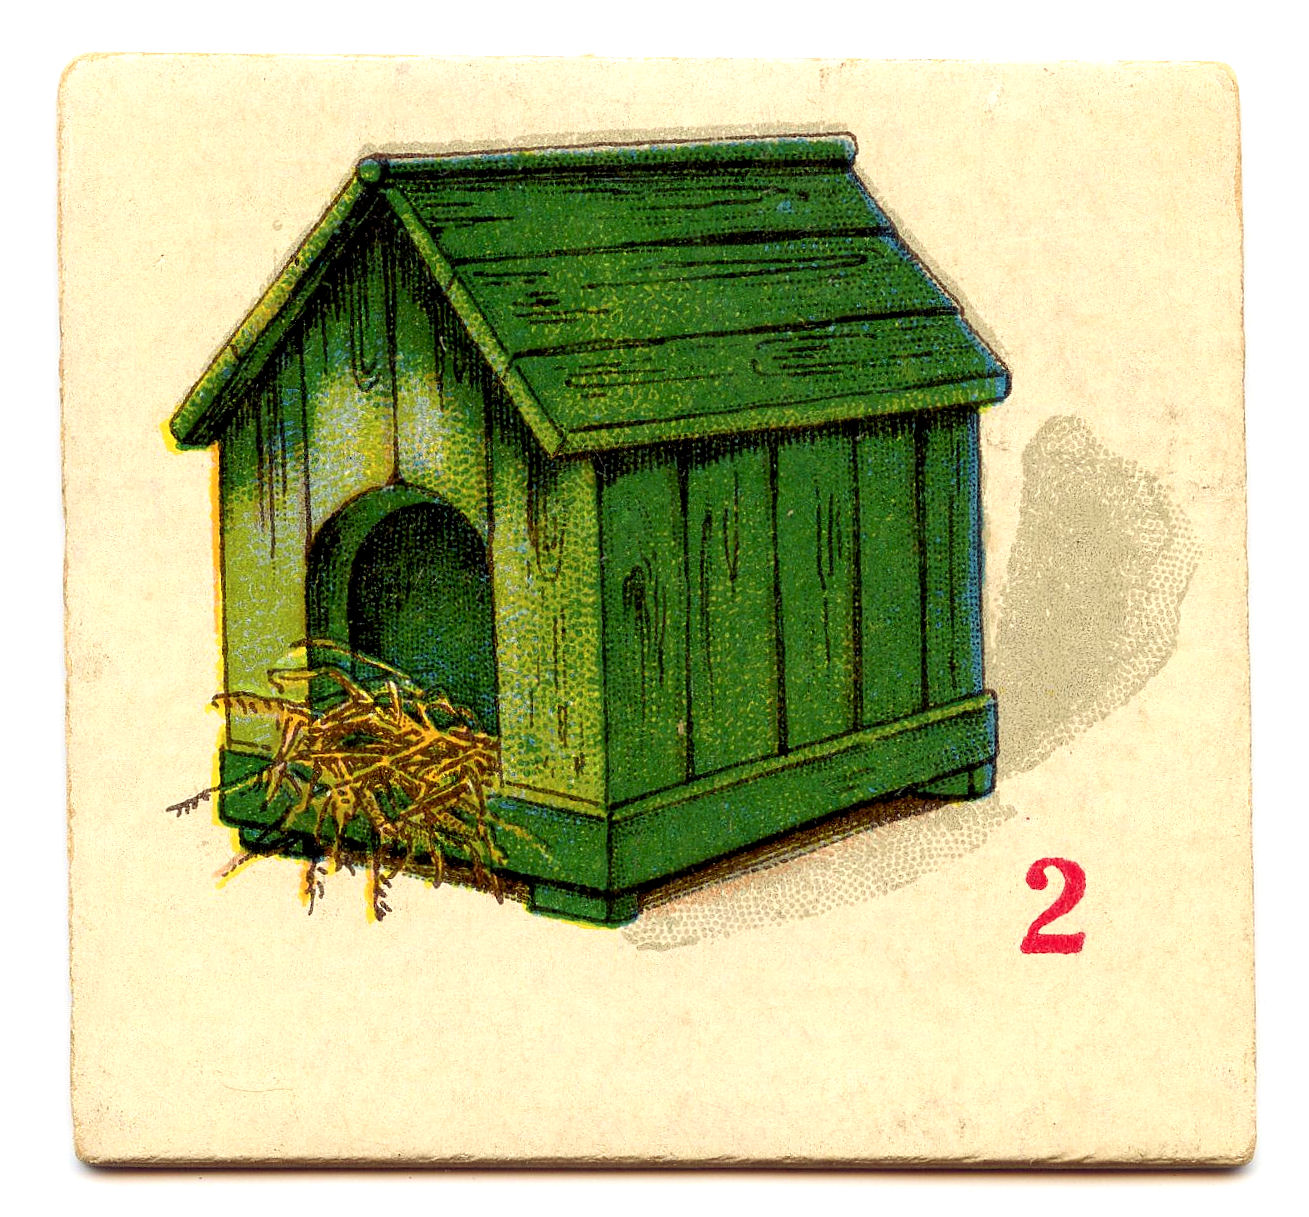 Free Clip Art - Vintage Game Cards - Dog House, Bike, Boat ...